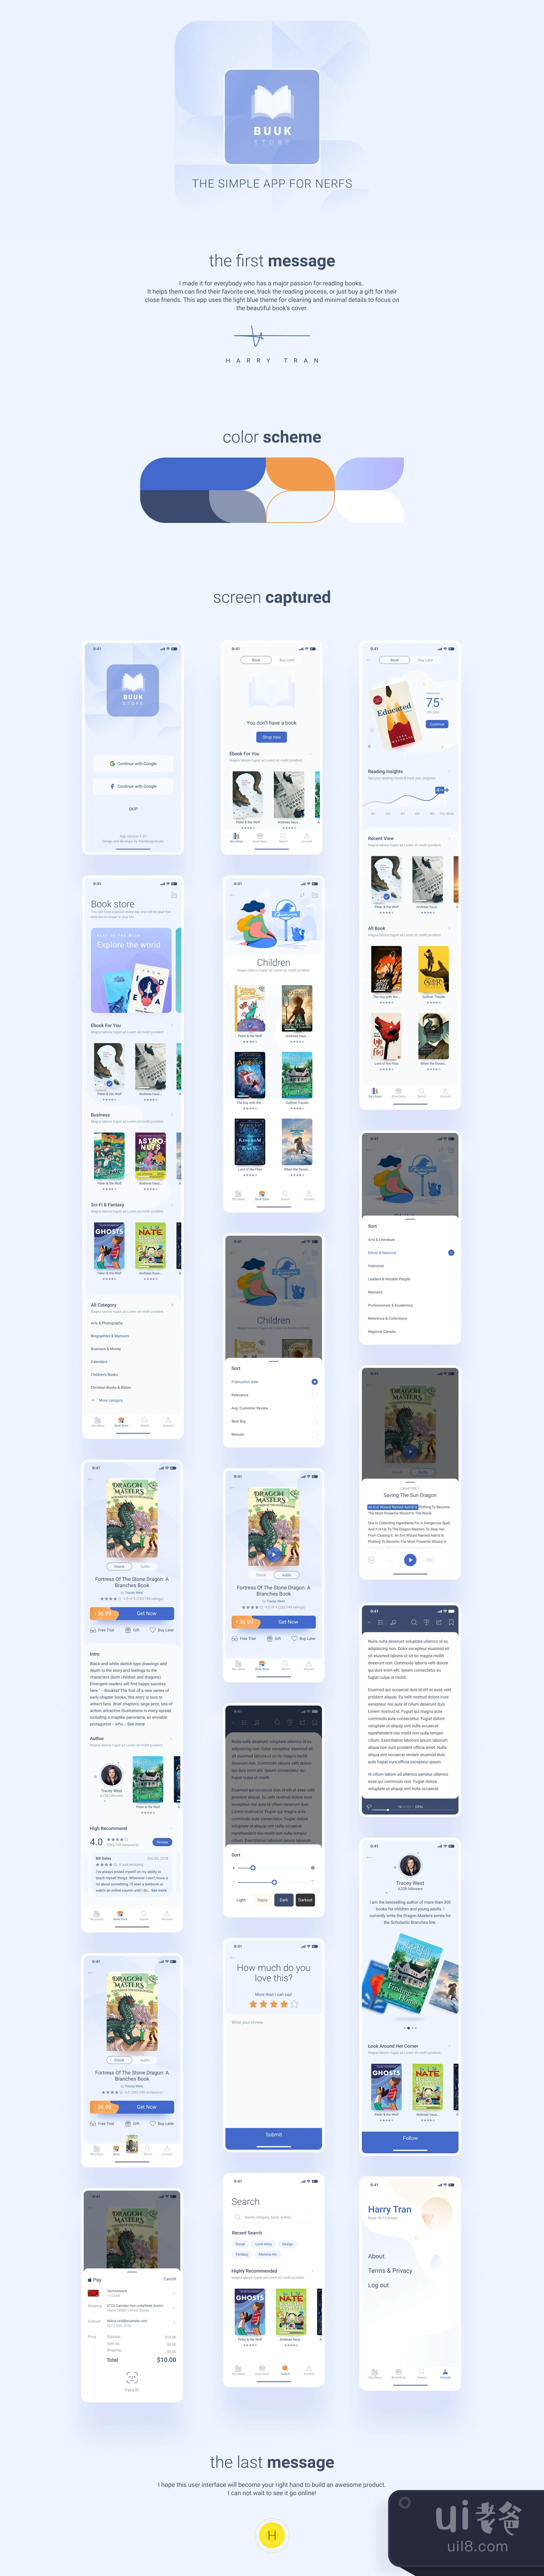 书店 - 书呆子的新鲜图书应用 (Book Store - The fresh book app f插图